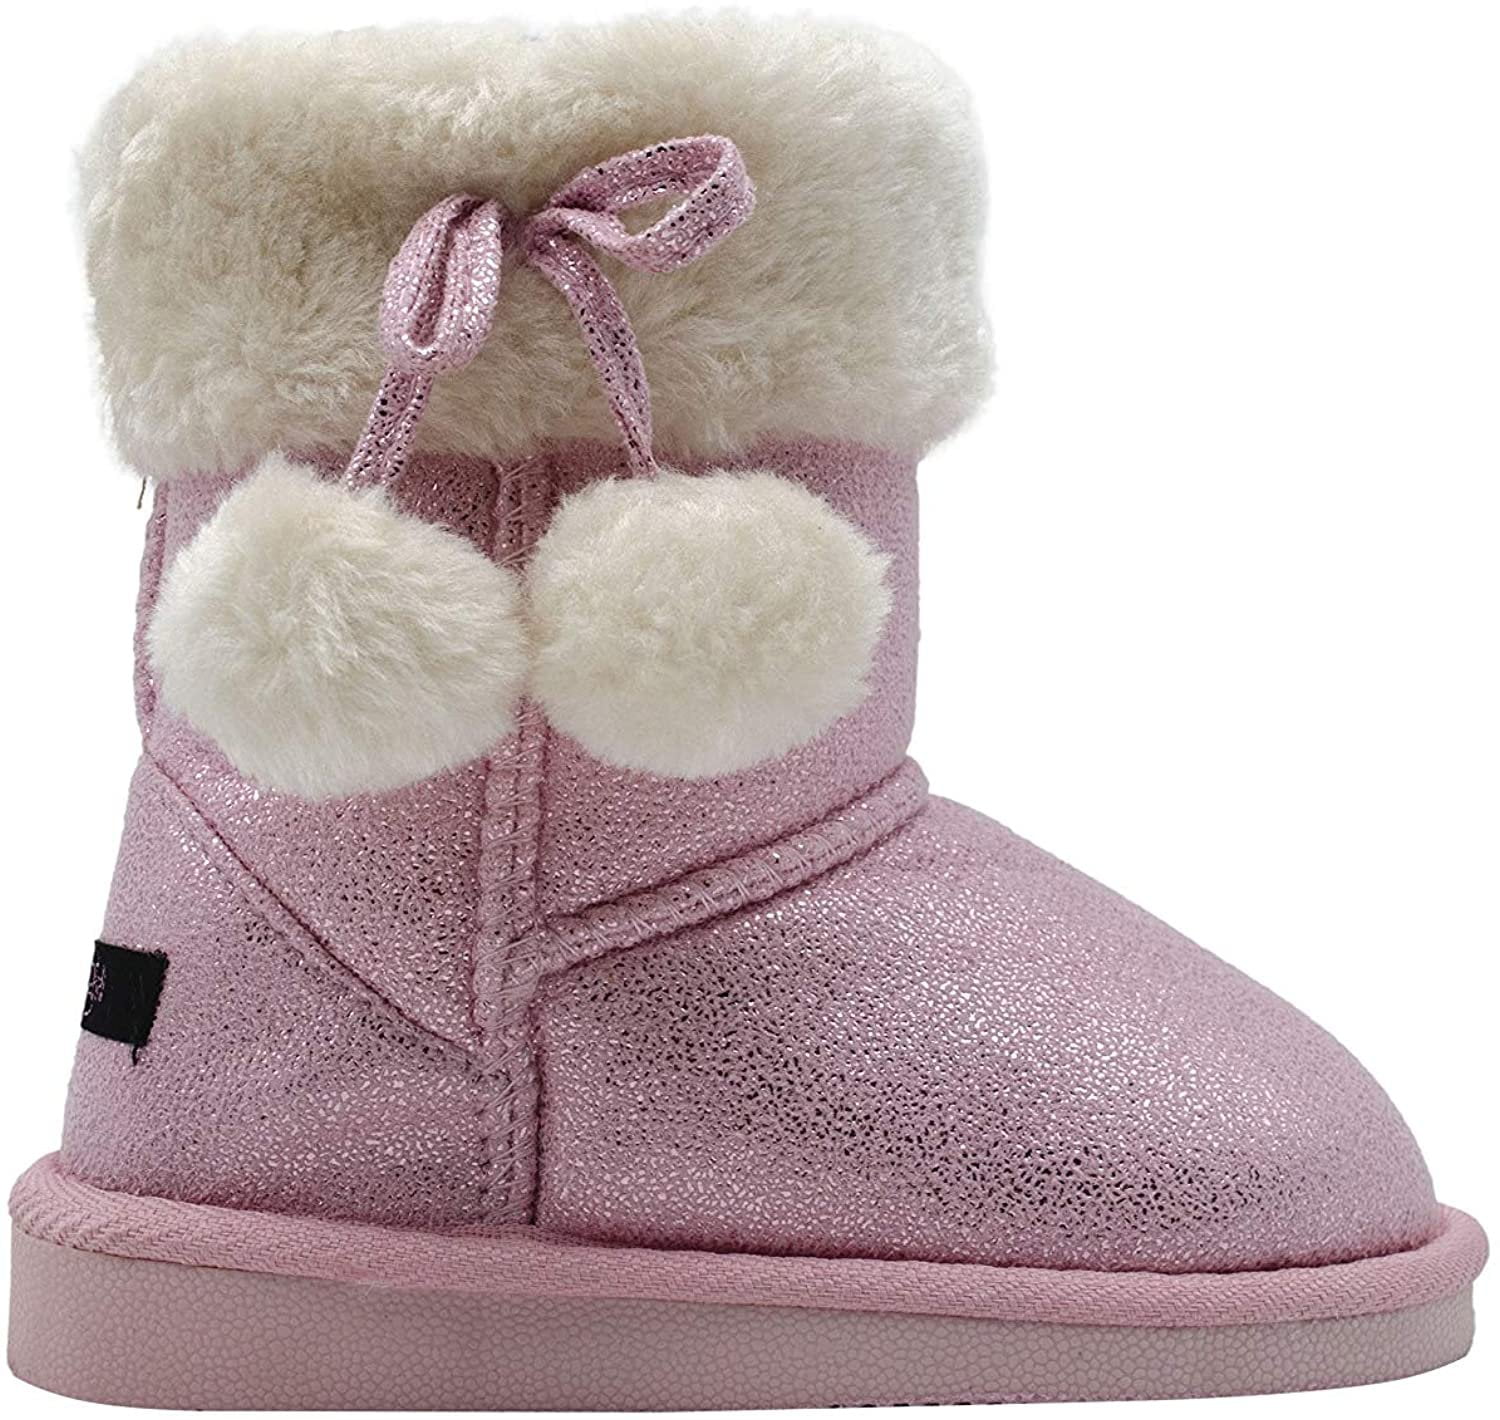 kensie Toddler Girls’ Little Kid Slip On Mid Calf Shimmer Winter Boots ...